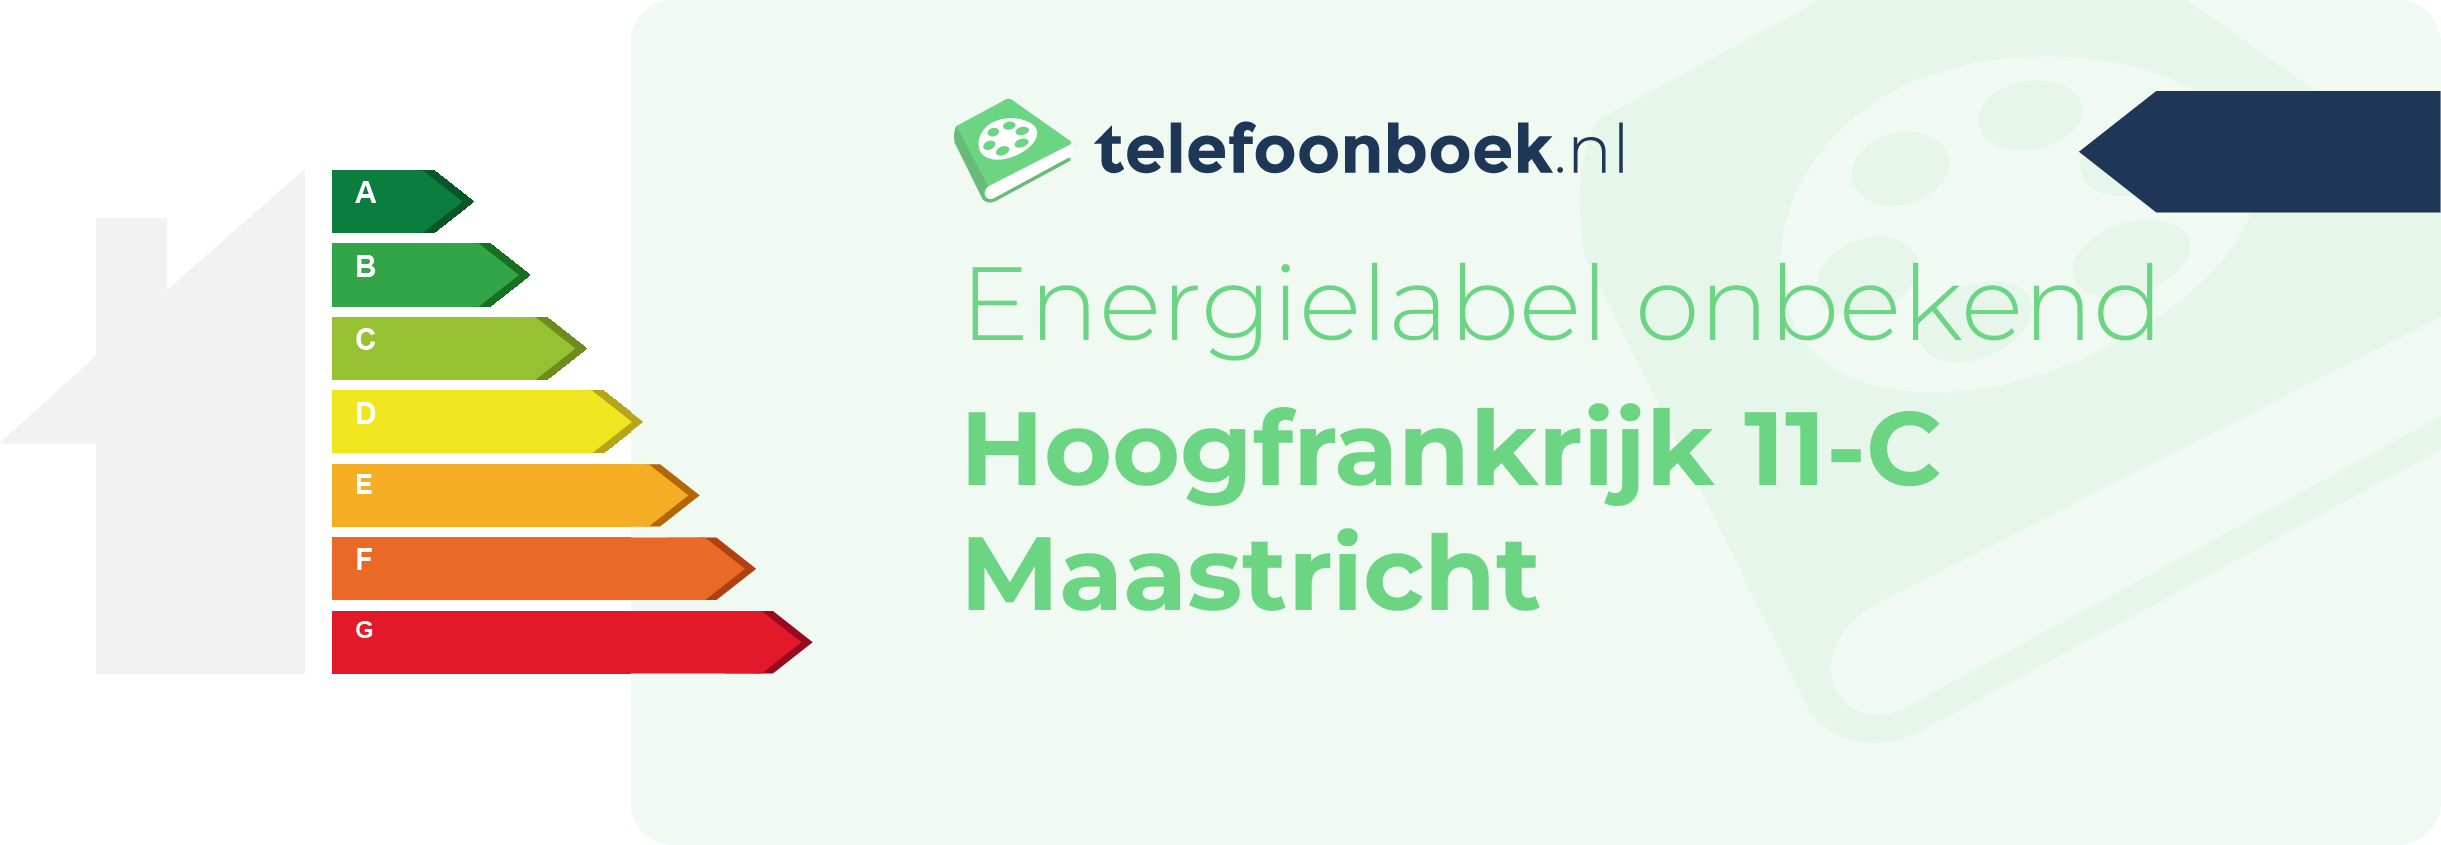 Energielabel Hoogfrankrijk 11-C Maastricht